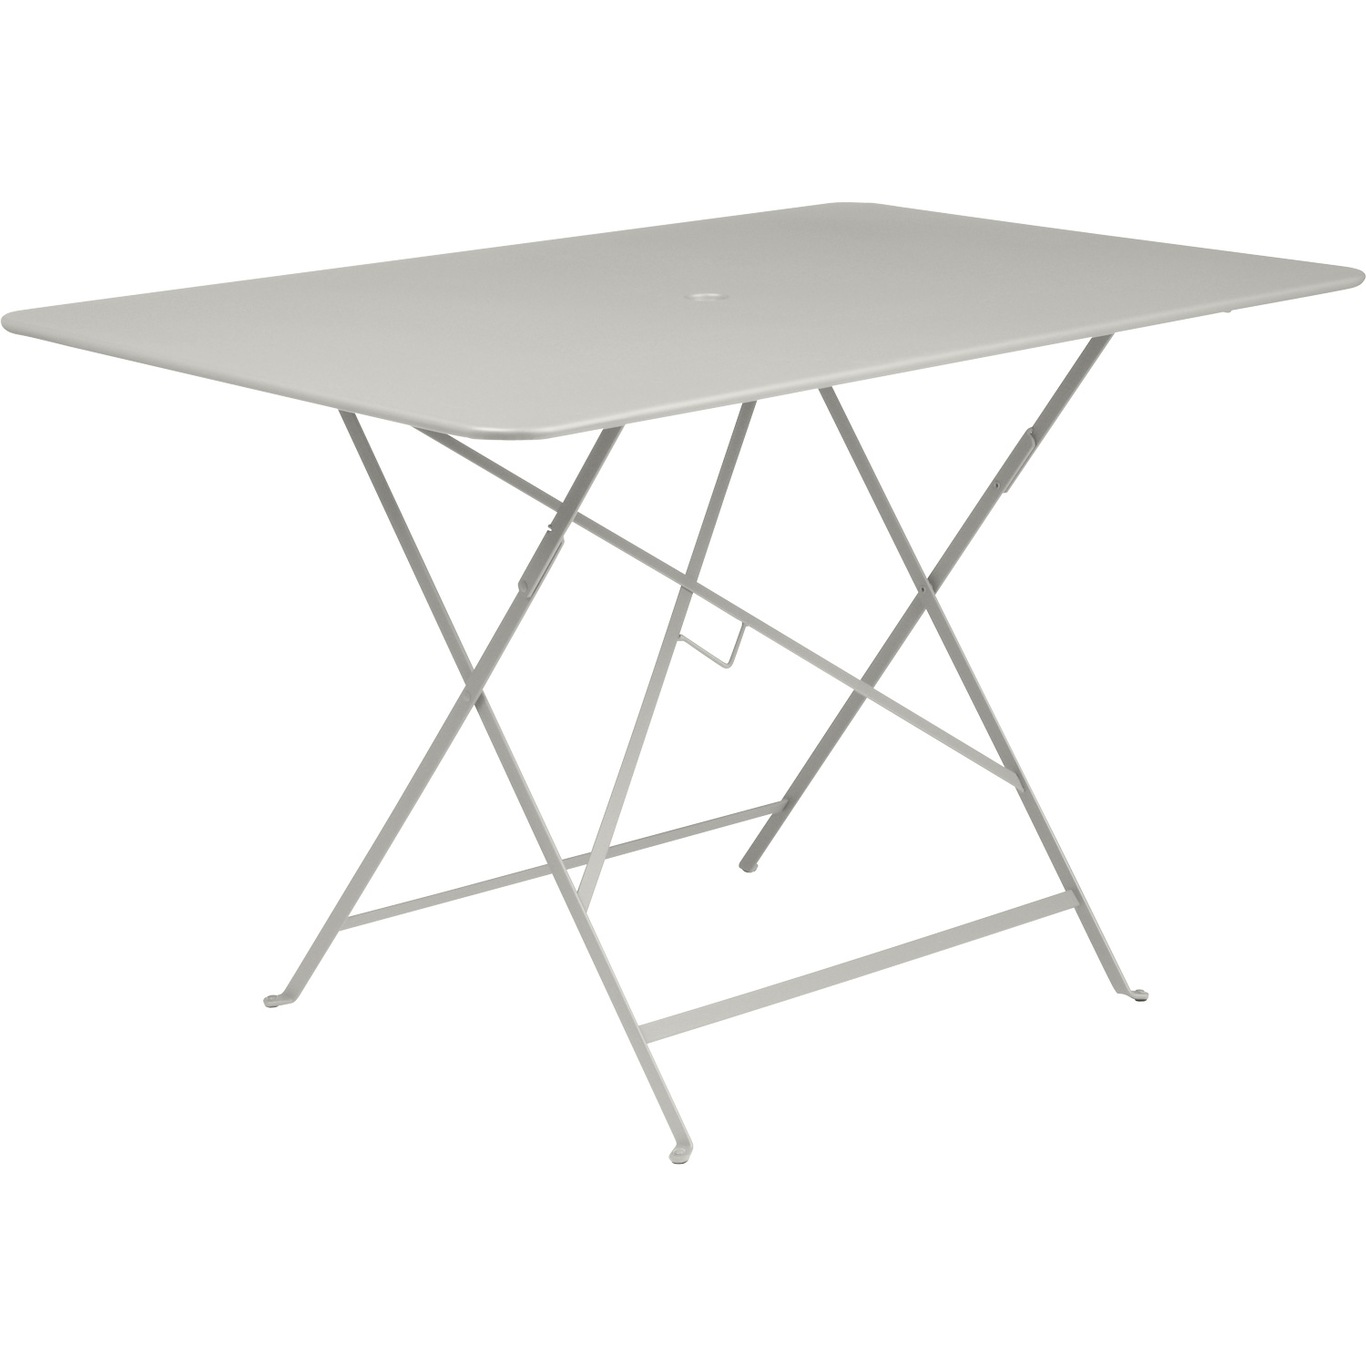 Bistro Table 117x77, Clay Grey